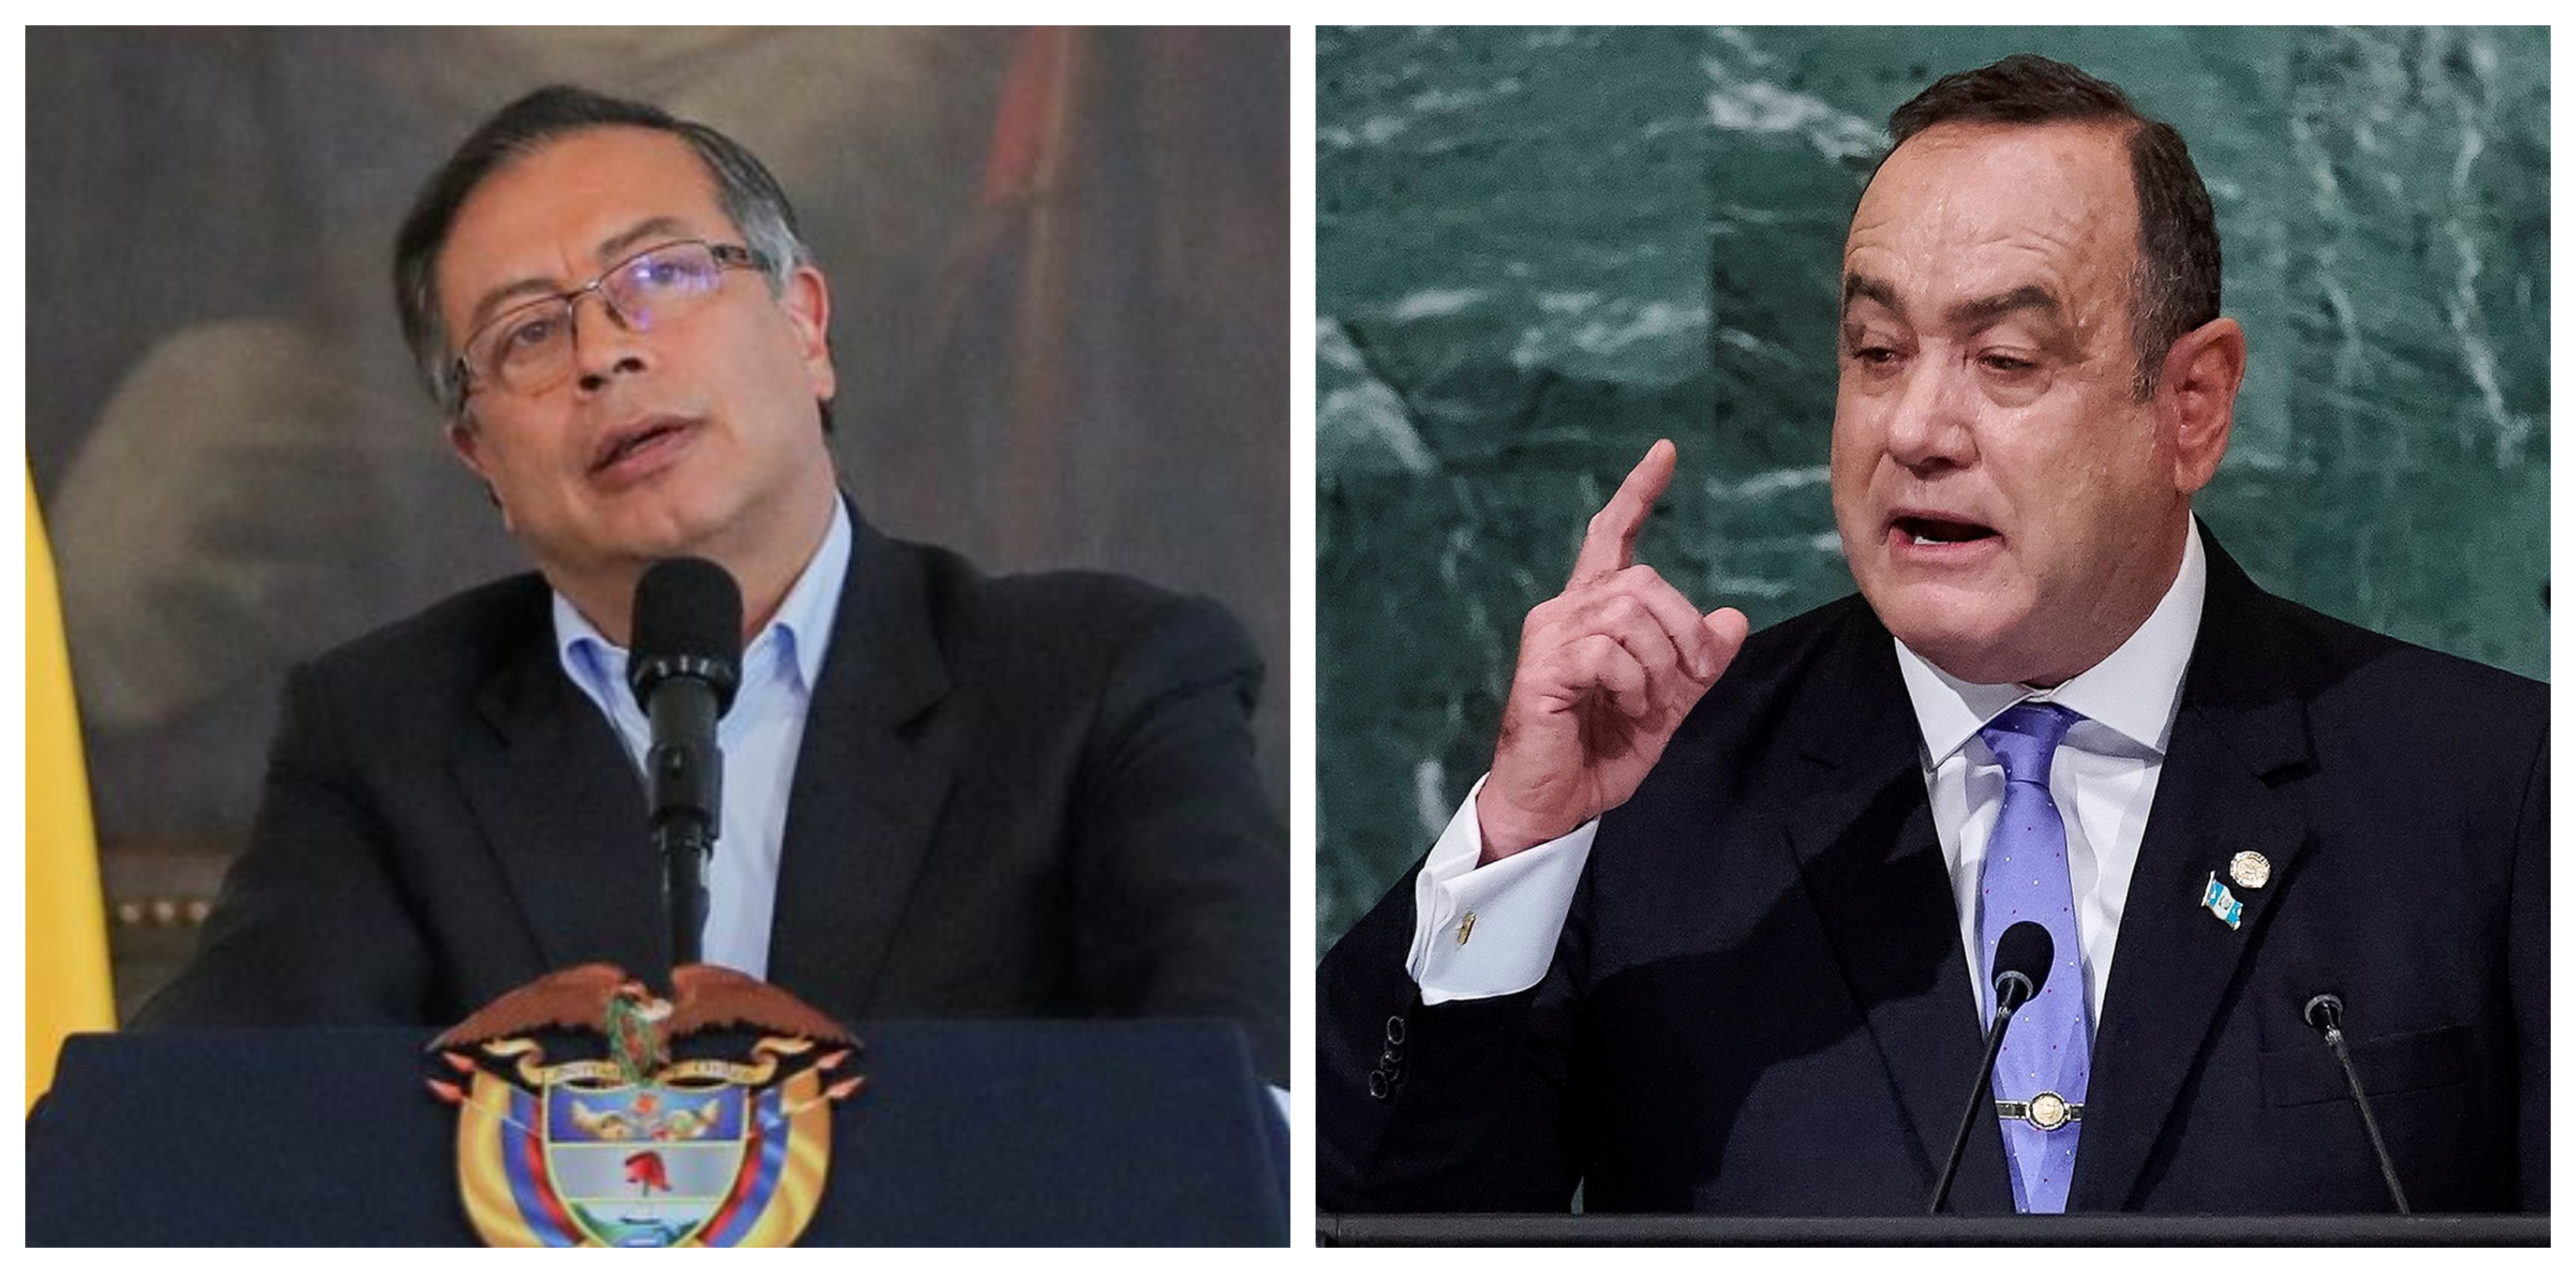 El presidente de Guatemala aseguró que no hay "persecución" tras la orden de detención contra el ministro de Defensa de Colombia, Iván Velásquez.
Archivo